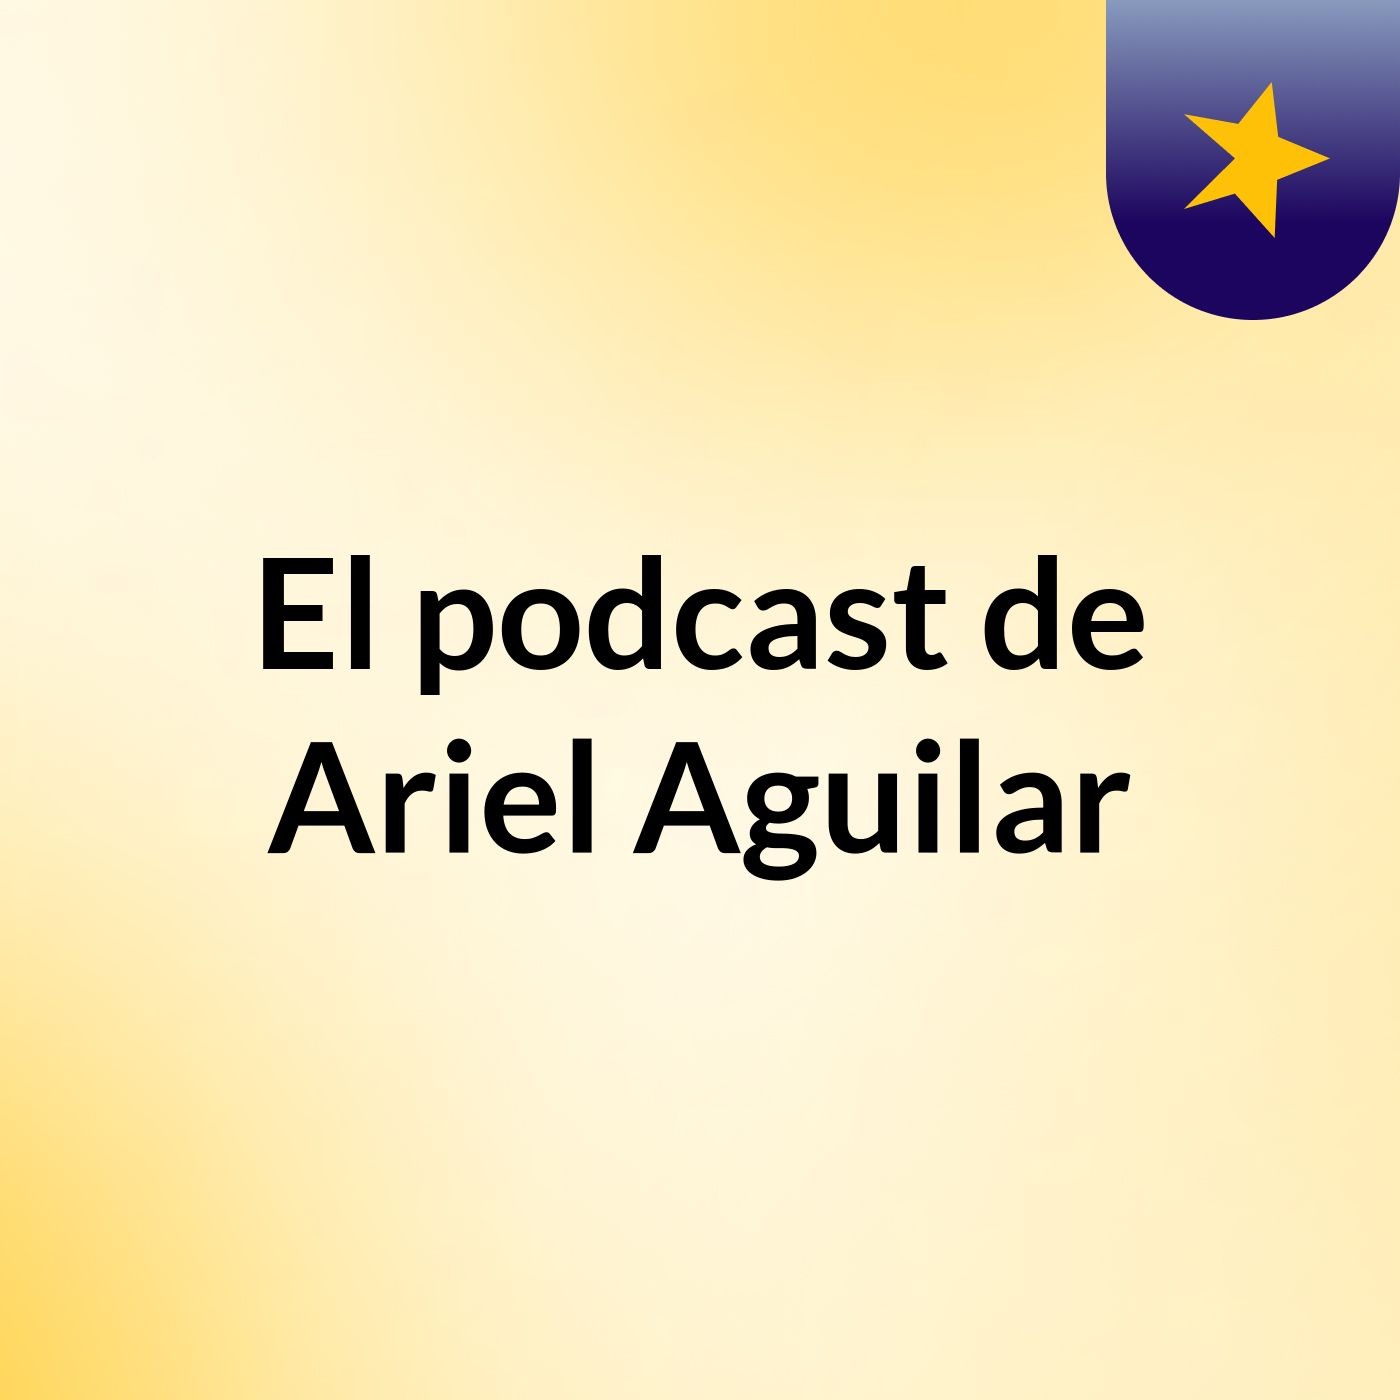 El podcast de Ariel Aguilar